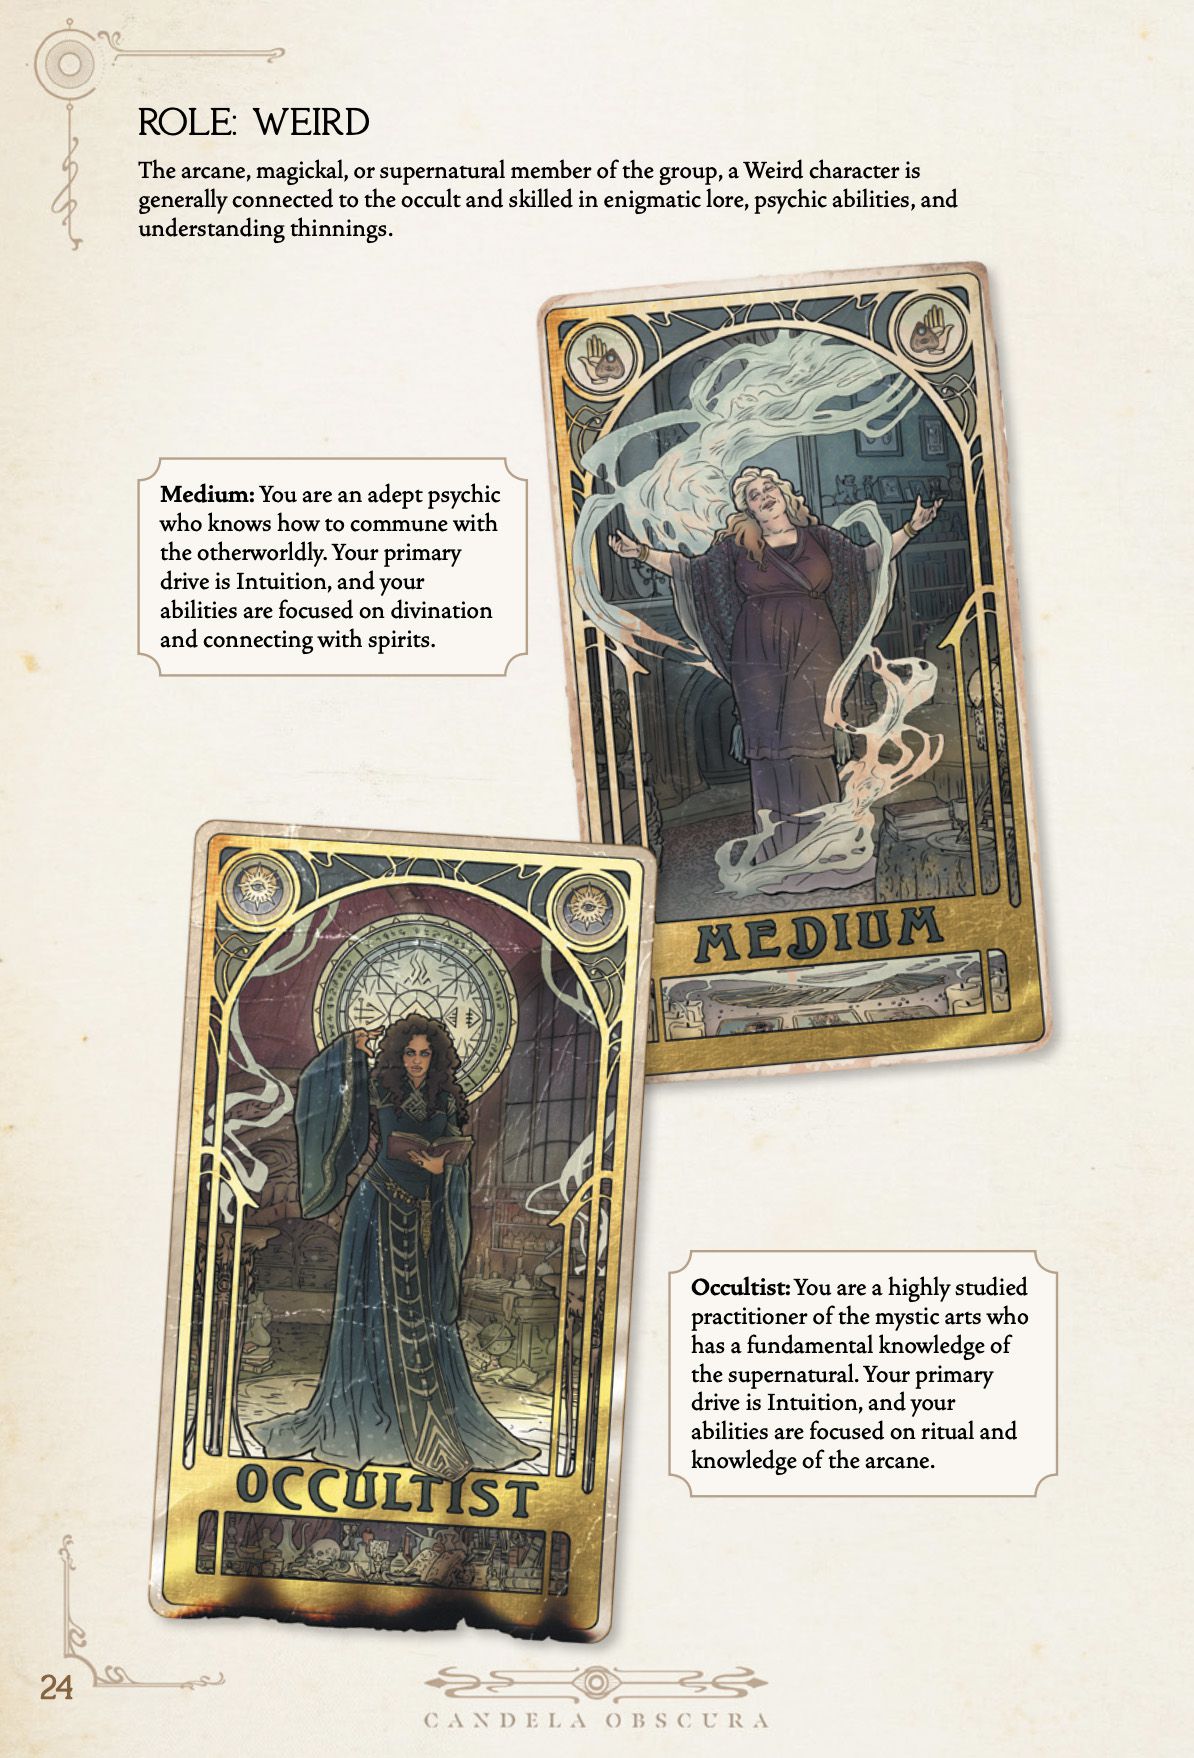 En enda sida från Candela Obscura-regelboken med konstiga roller, specialiteter som mediet och ockultisten.